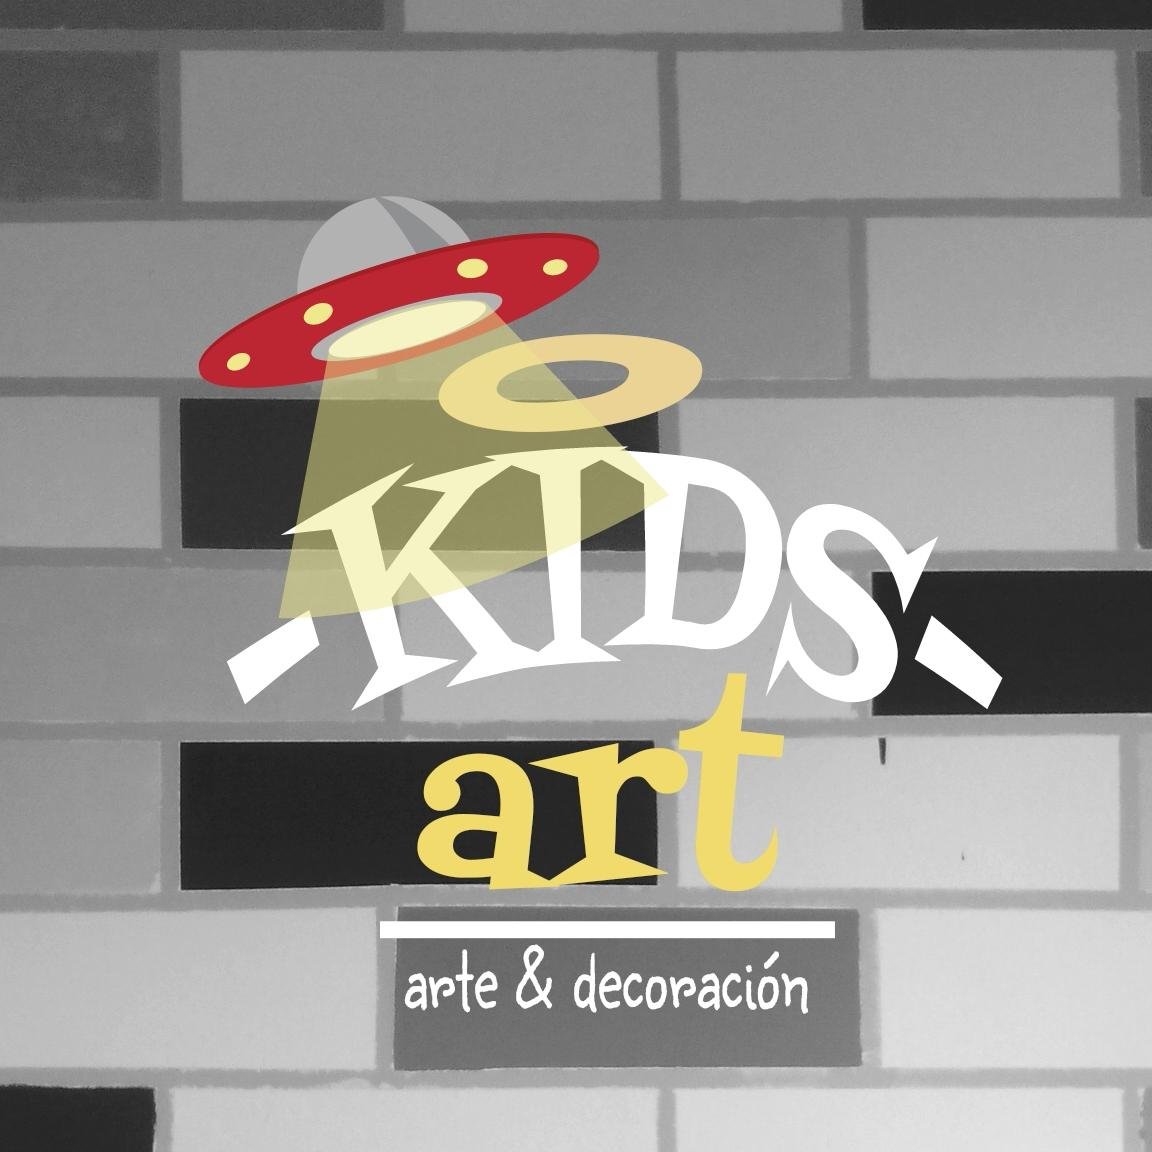 Kids Art esta enfocado en el arte y decoración para niños.
Nuestro propósito es ofrecerle a cada persona un producto exclusivo y personalizado.